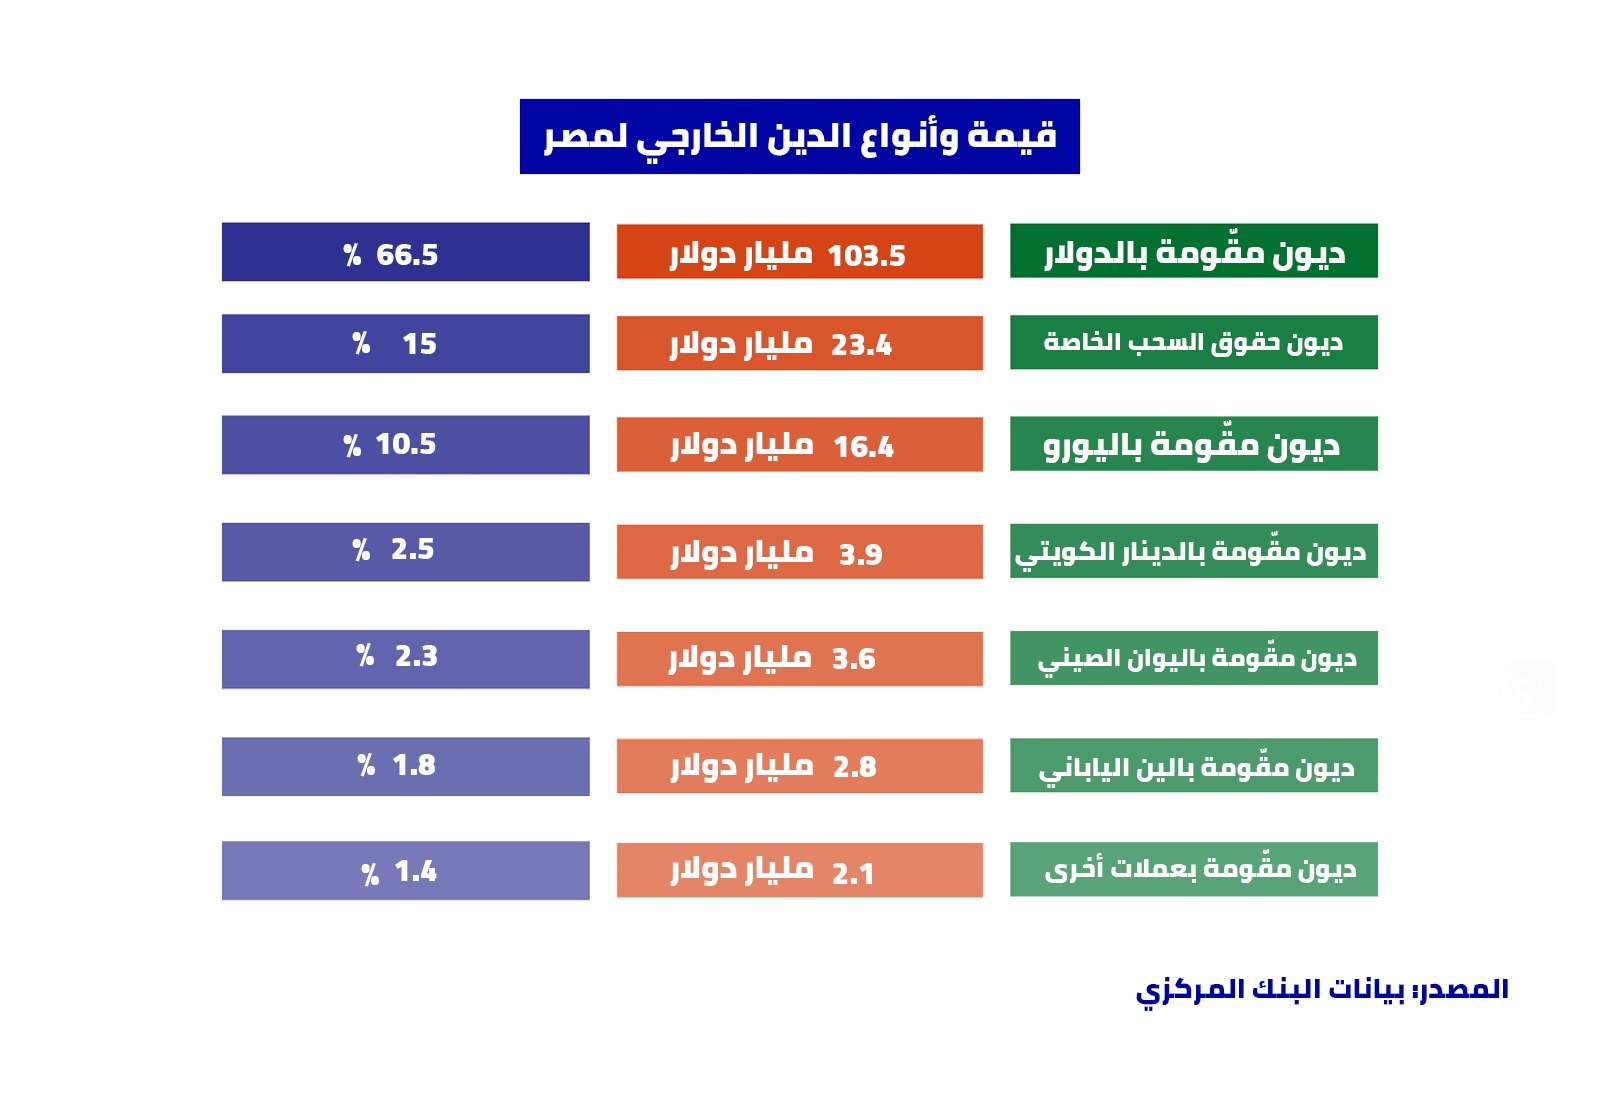 قيمة وأنواع الدين الخارجي لمصر (المصدر: بيانات البنك المركزي)